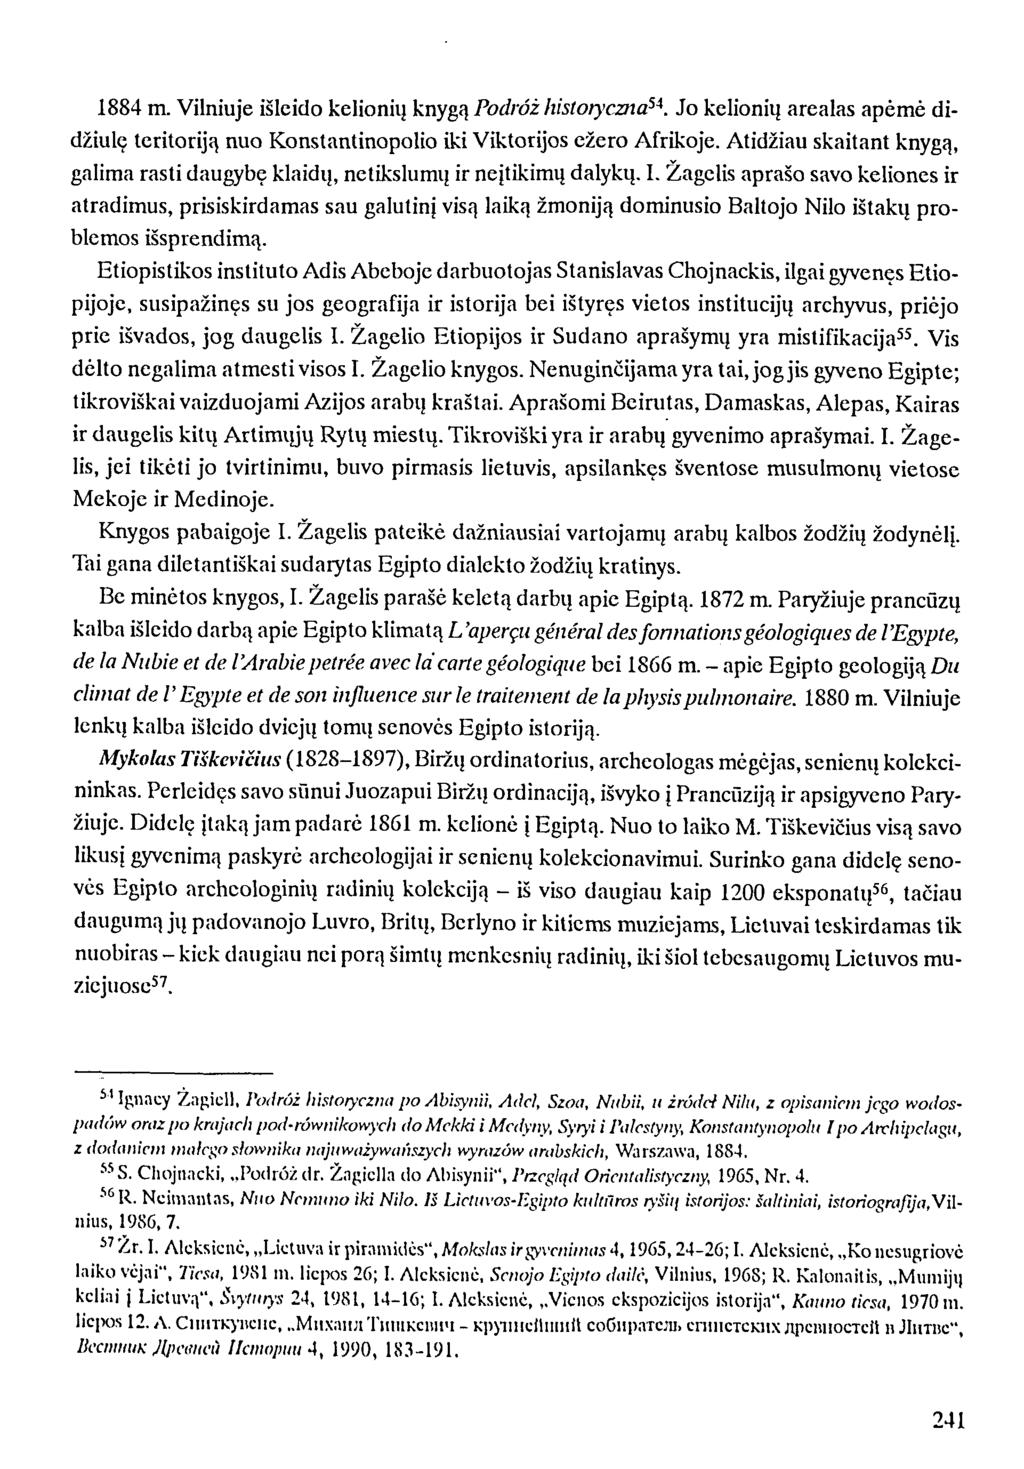 1884 m. Vilniuje išleido kelionių knygą Podróż historyczna 54. Jo kelionių arealas apėmė didžiulę teritoriją nuo Konstantinopolio iki Viktorijos ežero Afrikoje.